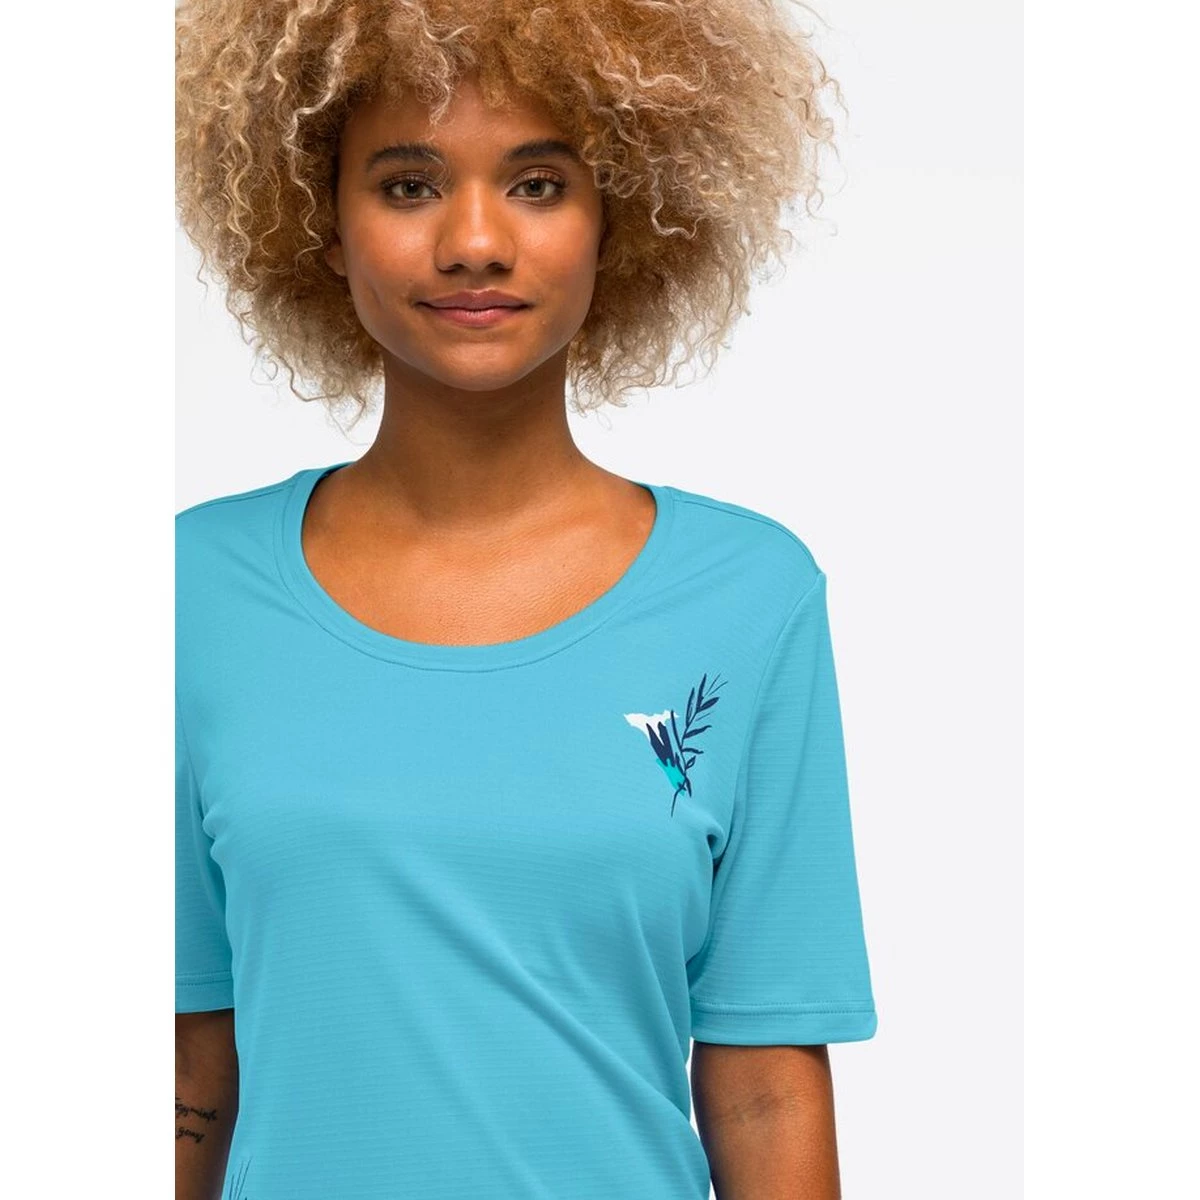 Maier Sports T-shirt sas Irmi - Shirts & Tops - Outdoorkleding - Outdoor -  Sporten - Intersport van den Broek / Biggelaar